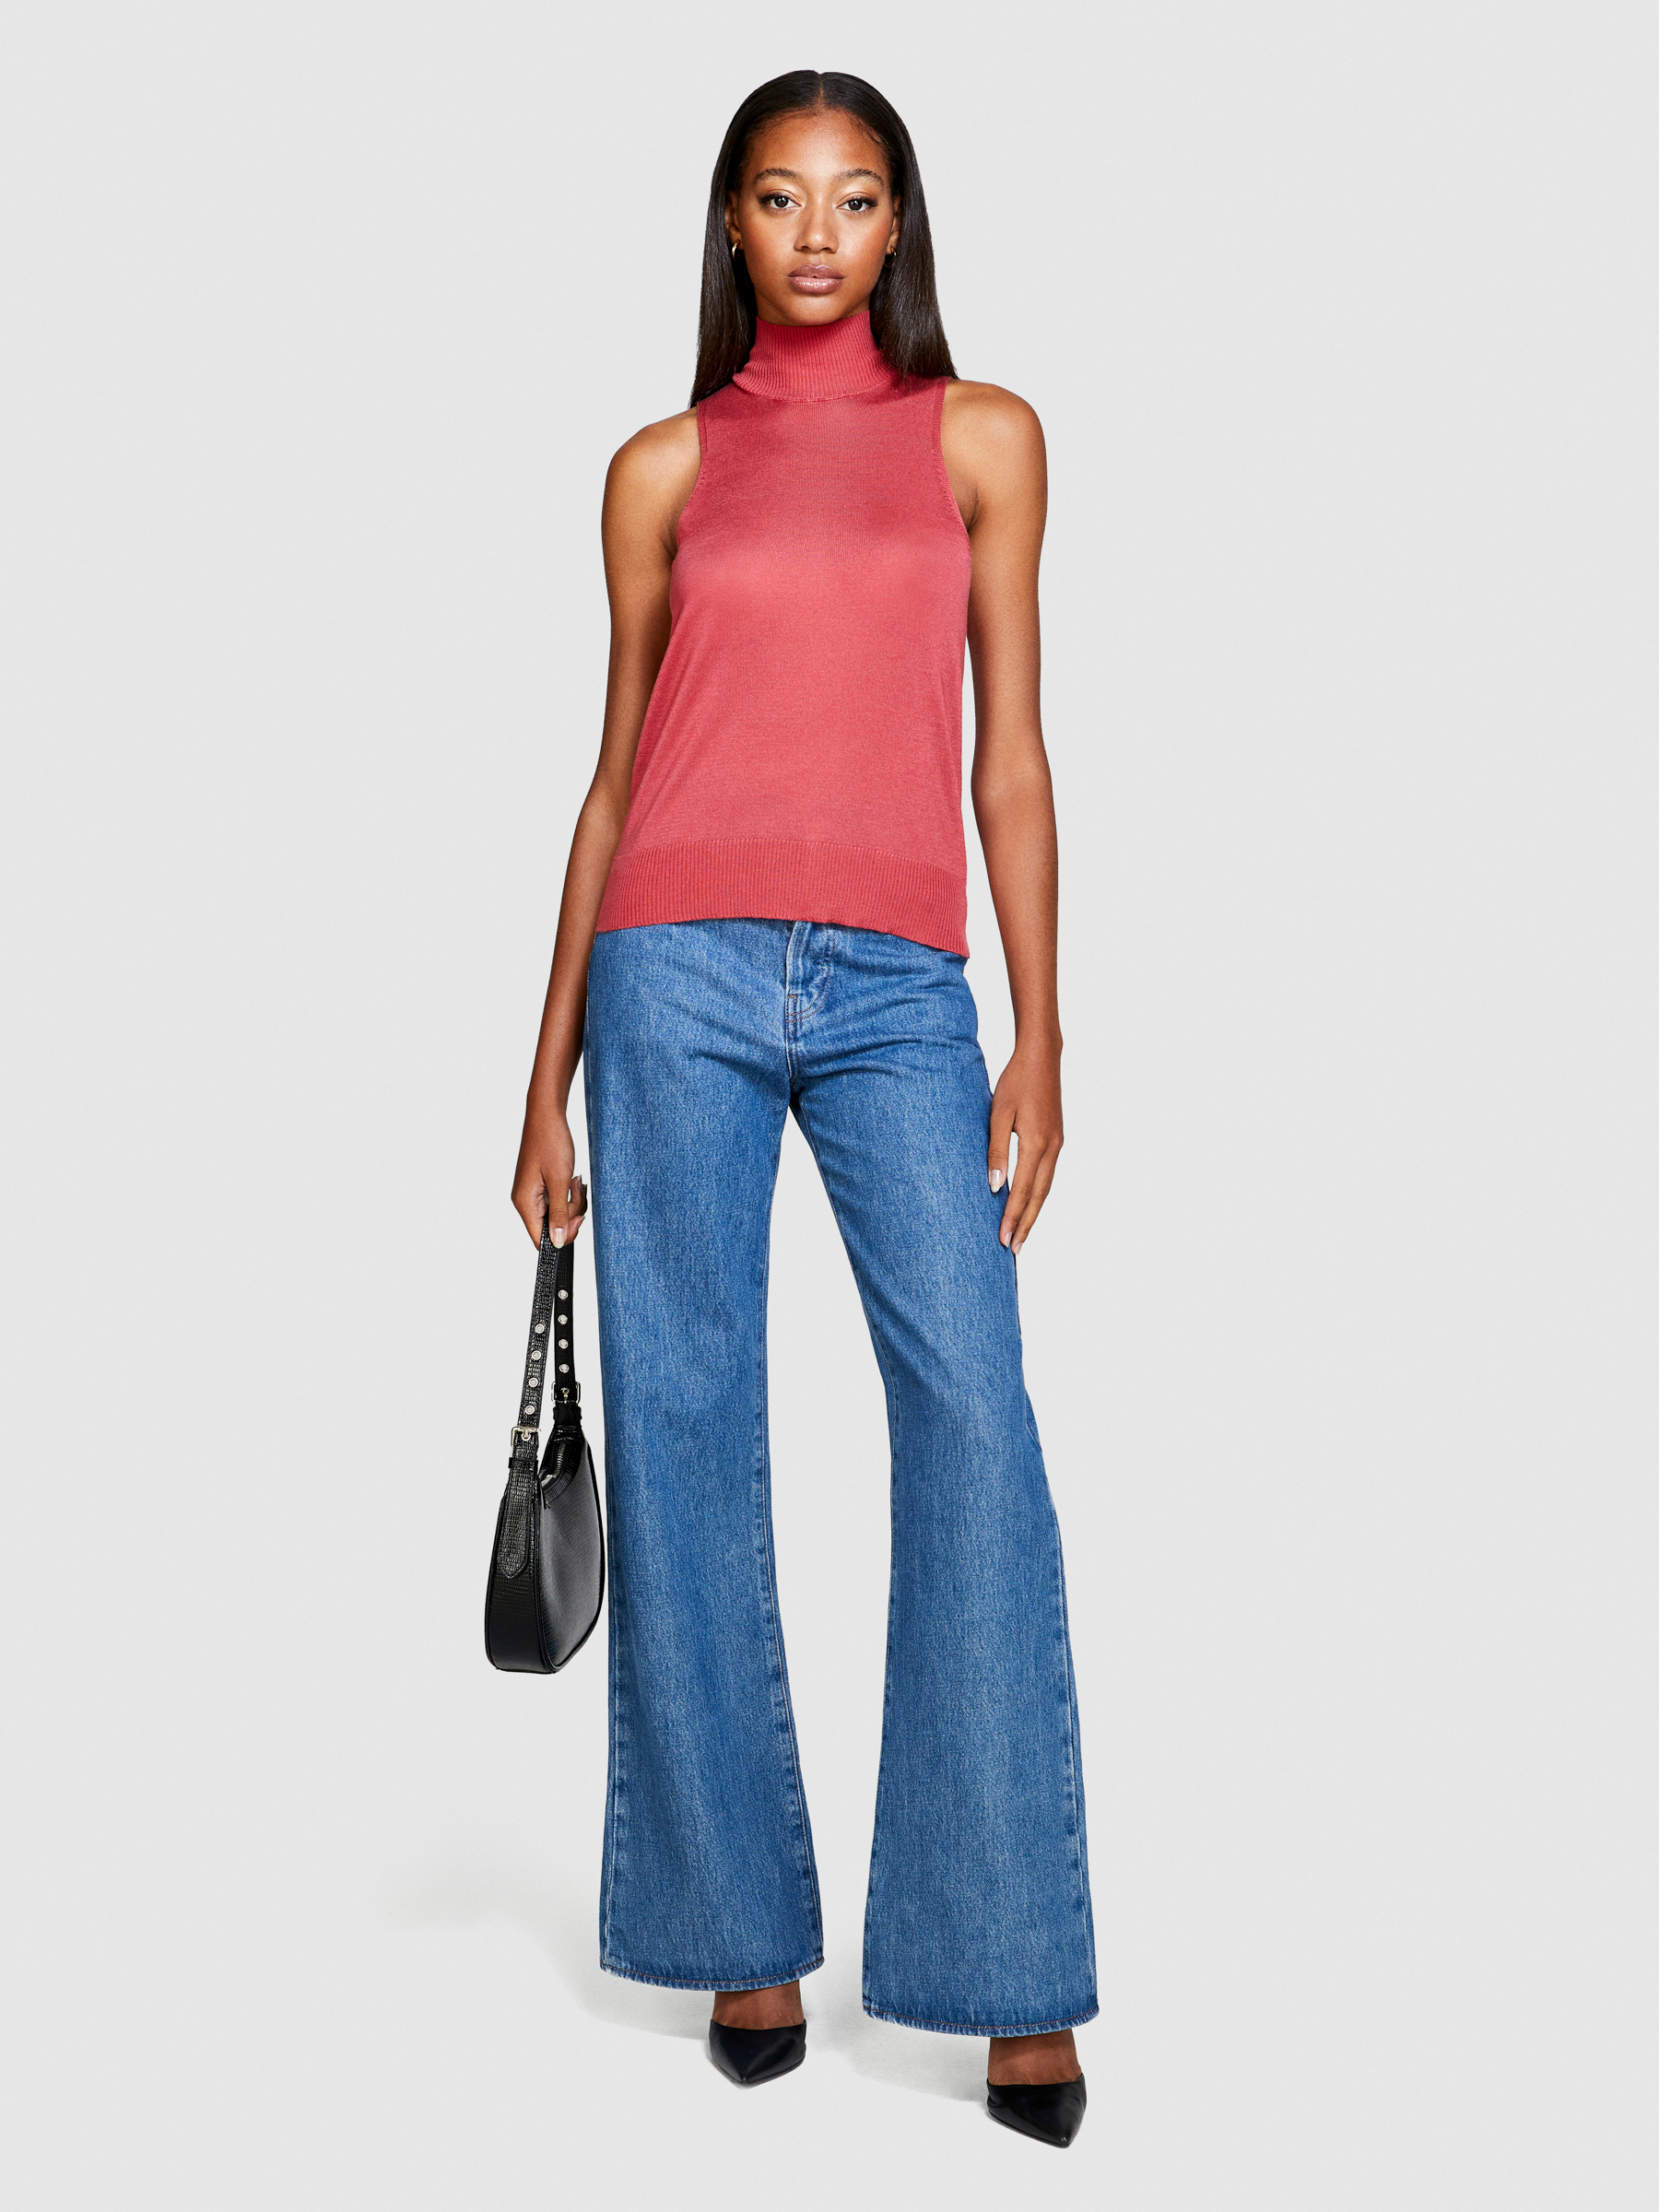 Sisley - Knit Turtleneck Top, Woman, Coral, Size: XS